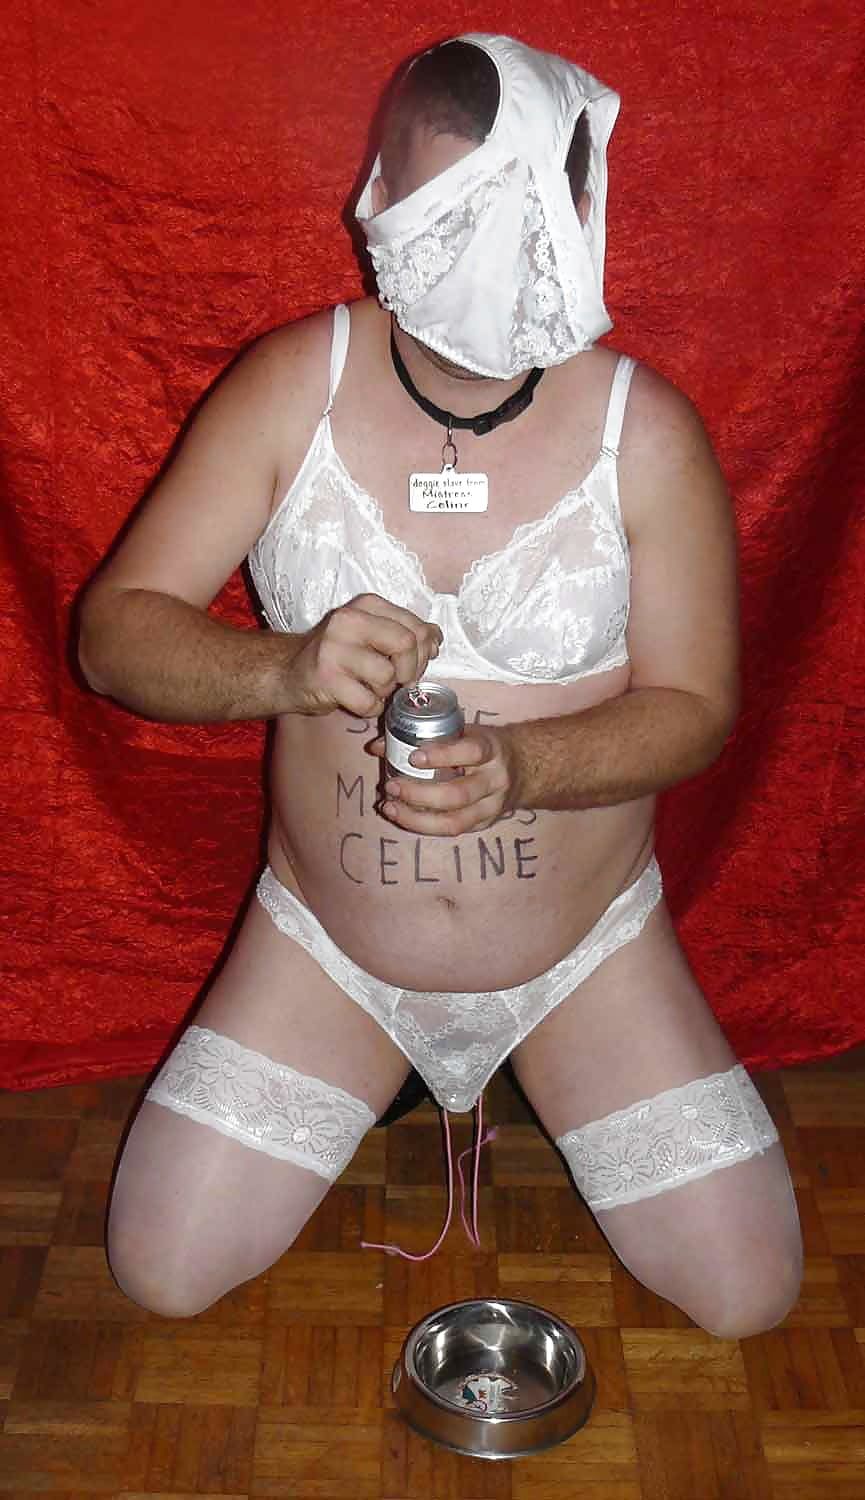 drink coke from bowl, Mistress Celine #2